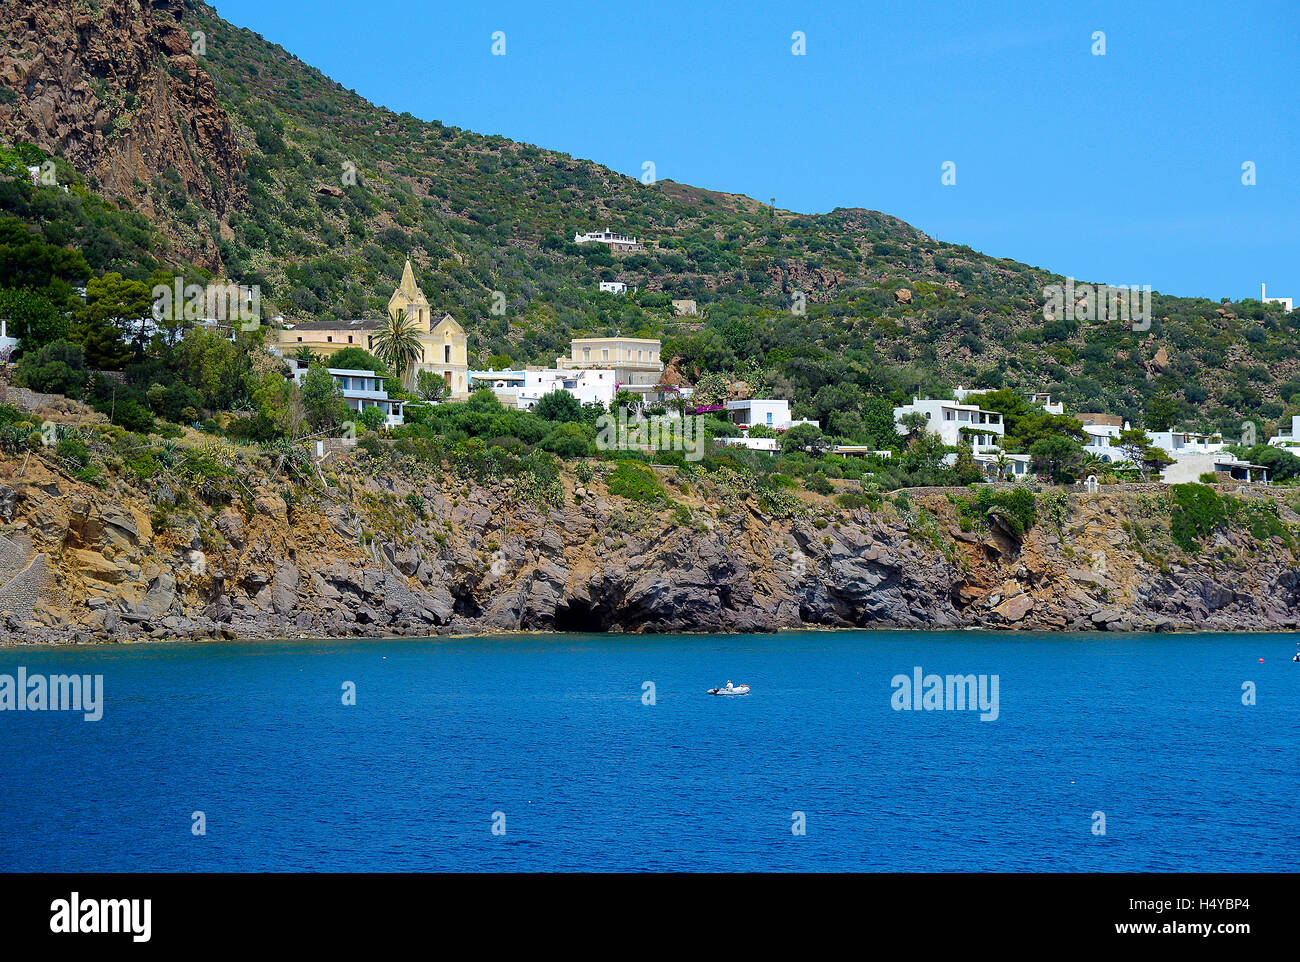 Italia Sicilia Isole Eolie Panarea una vista del villaggio di San Pietro Foto Stock